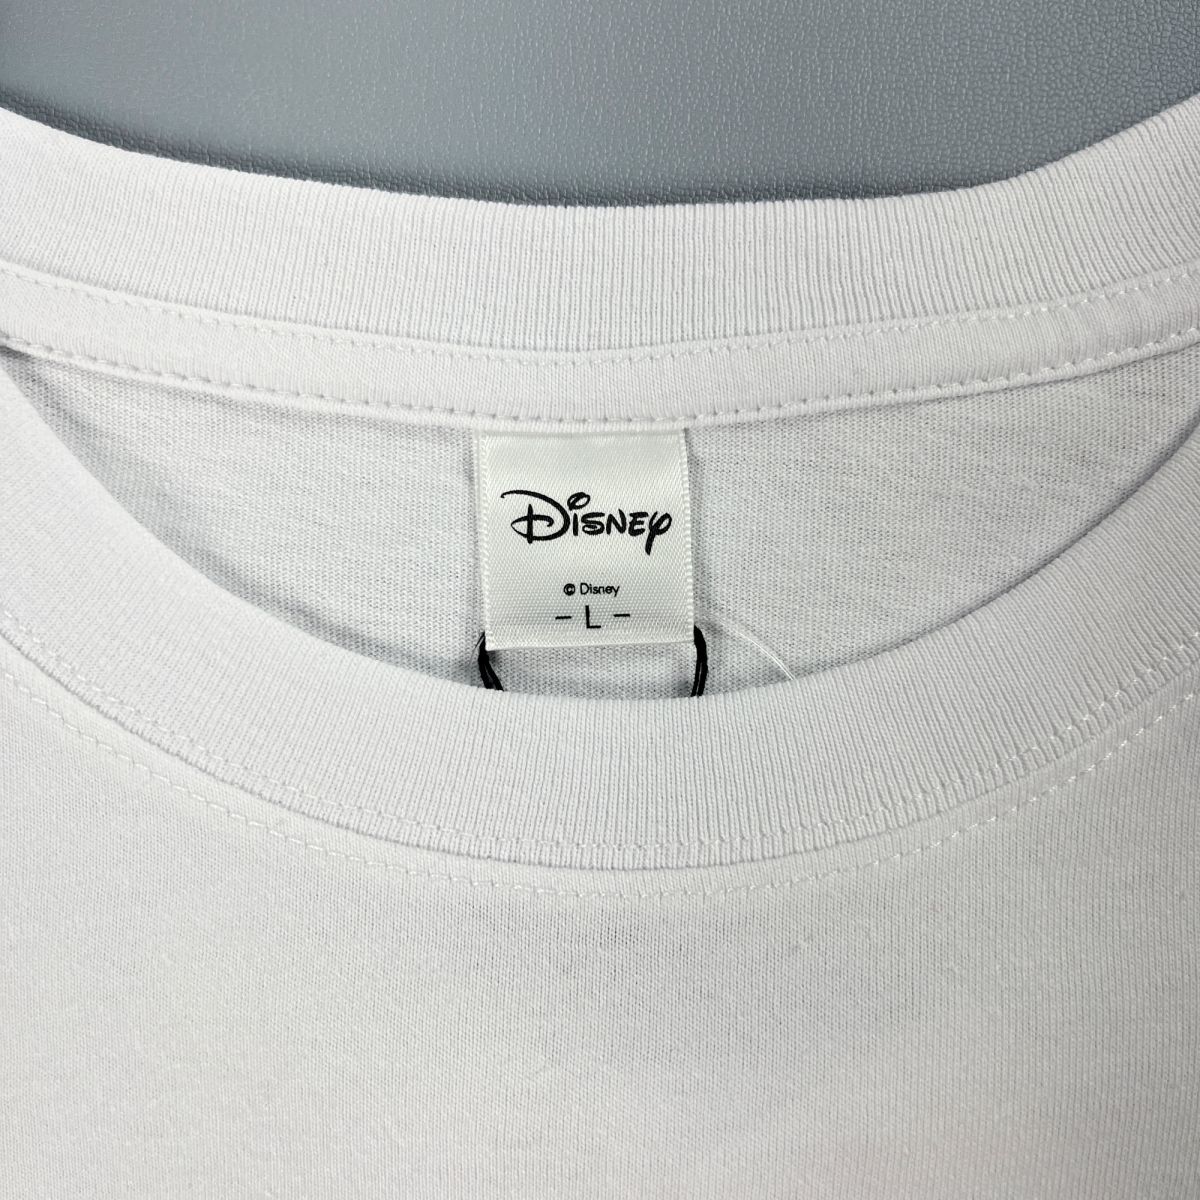 新品未使用 DISNEY ディズニー ミッキーマウス ポイント刺繍 クルーネック半袖Tシャツ トップス メンズ 白 ホワイト サイズL*MC243_画像5